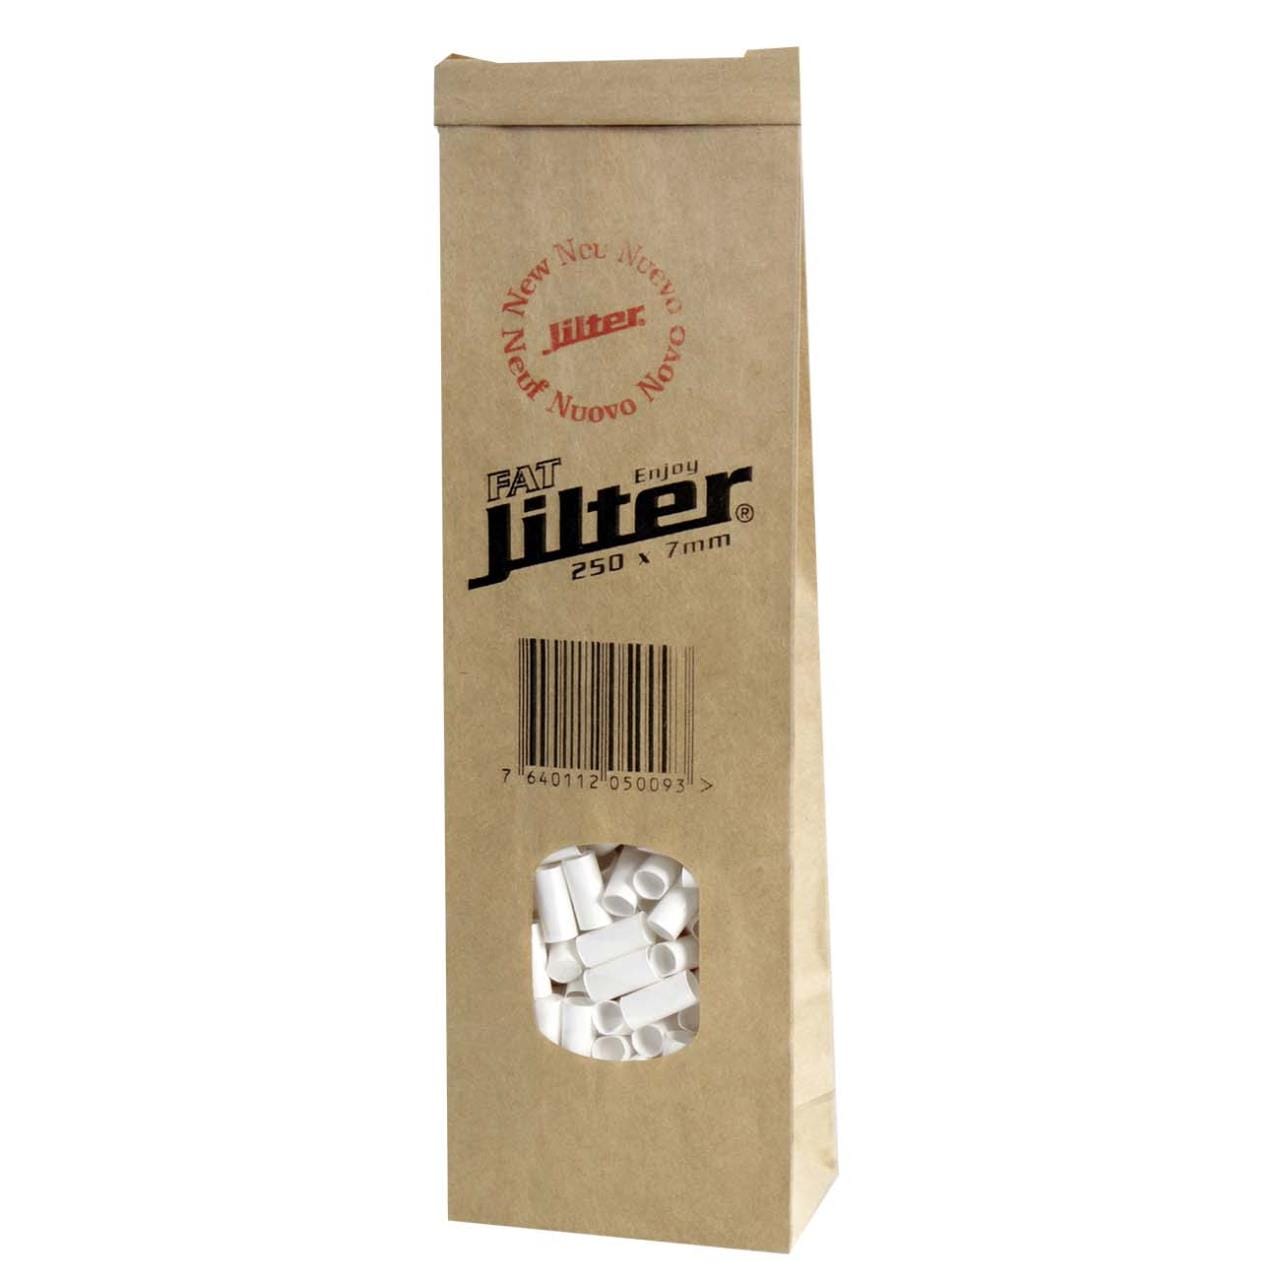 Jilter Filter Fat, Beutel